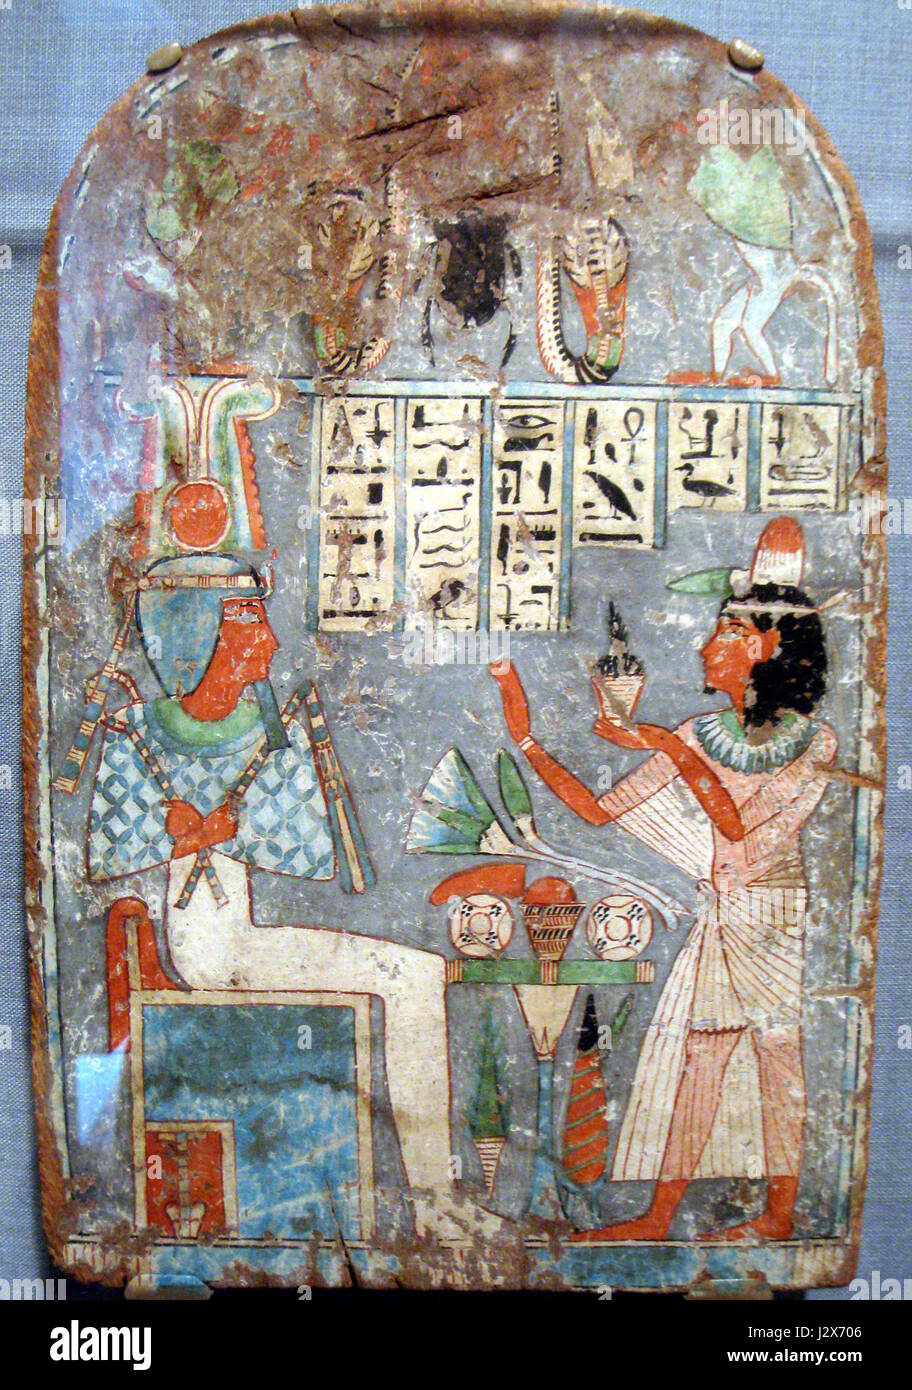 Ankh-auf-Mut adorant un Osiris assis, égyptienne, troisième période intermédiaire, la peinture sur bois - Worcester Art Museum - IMG 7538 Banque D'Images